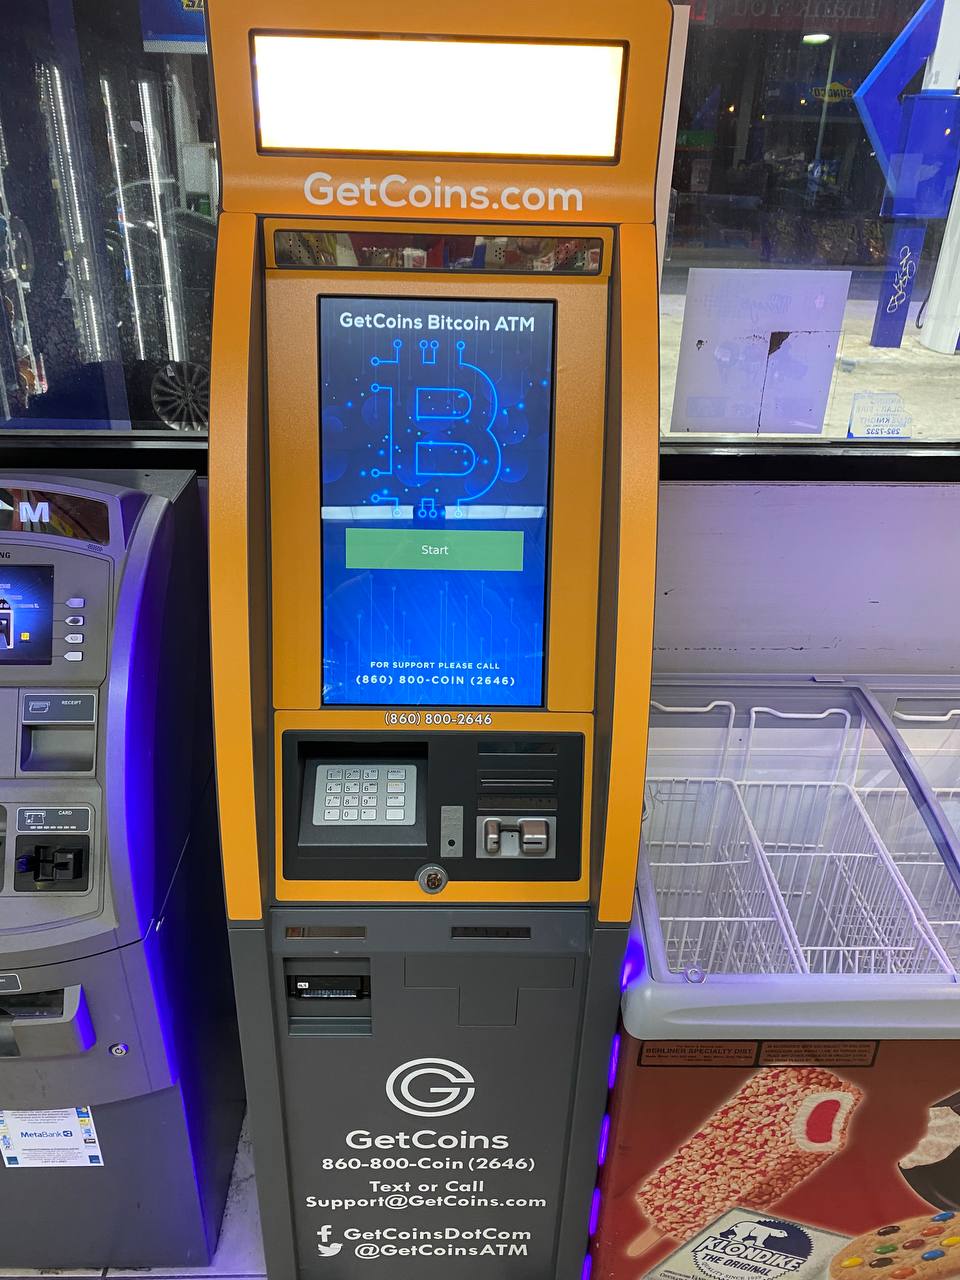 Getcoins - Bitcoin ATM - Inside of Sunoco in Washington, Washington D.C.